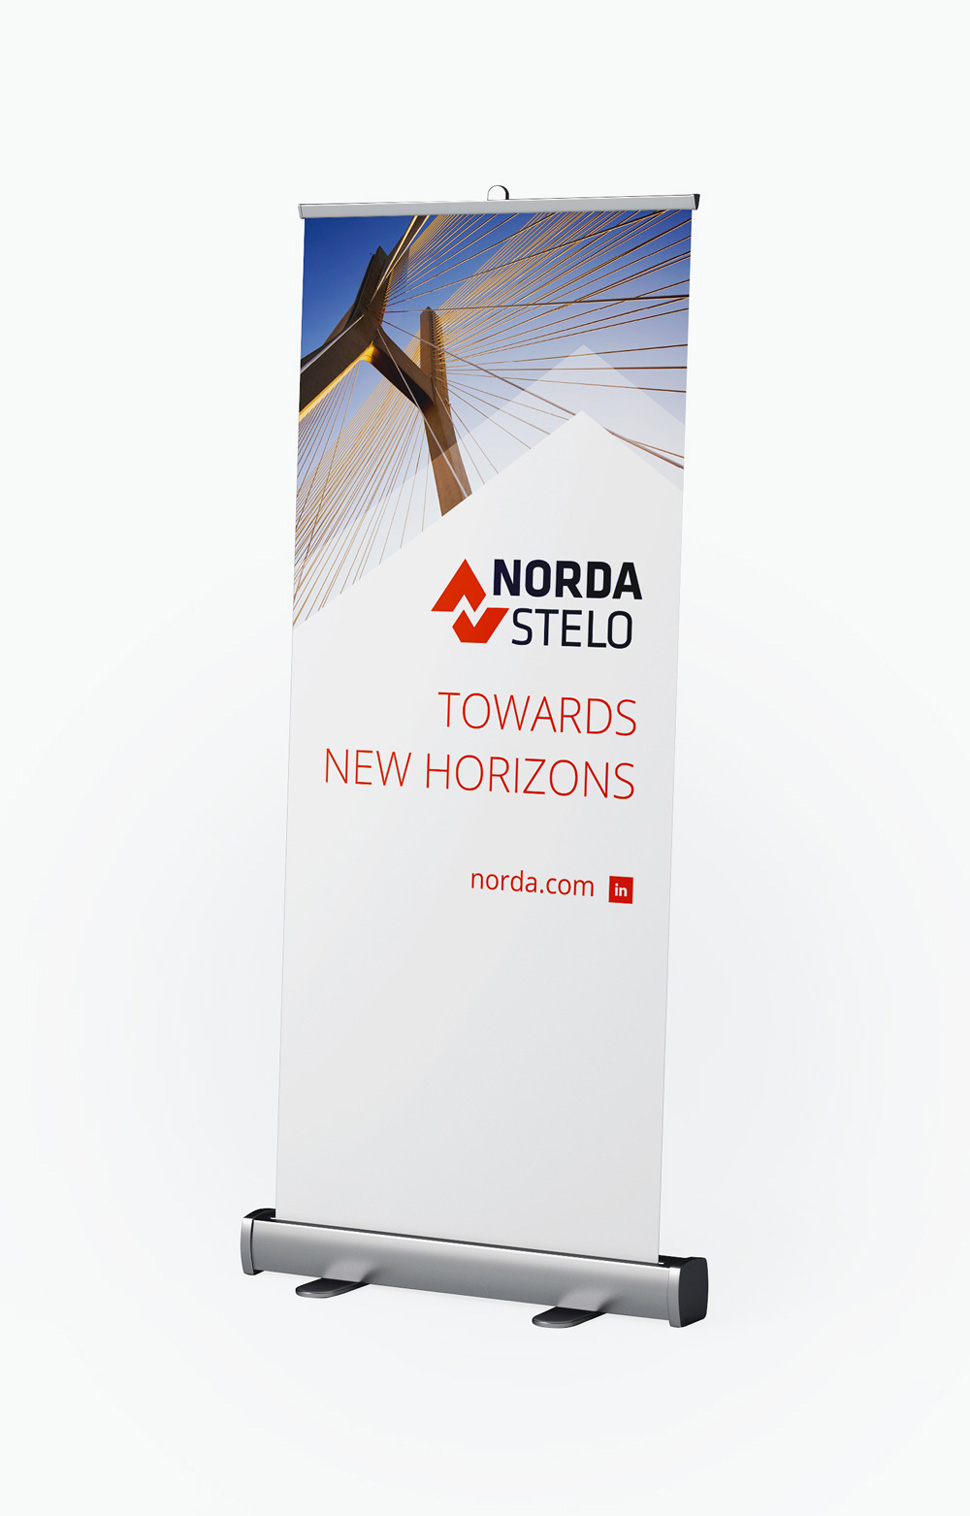 Branding: Norda Stelo